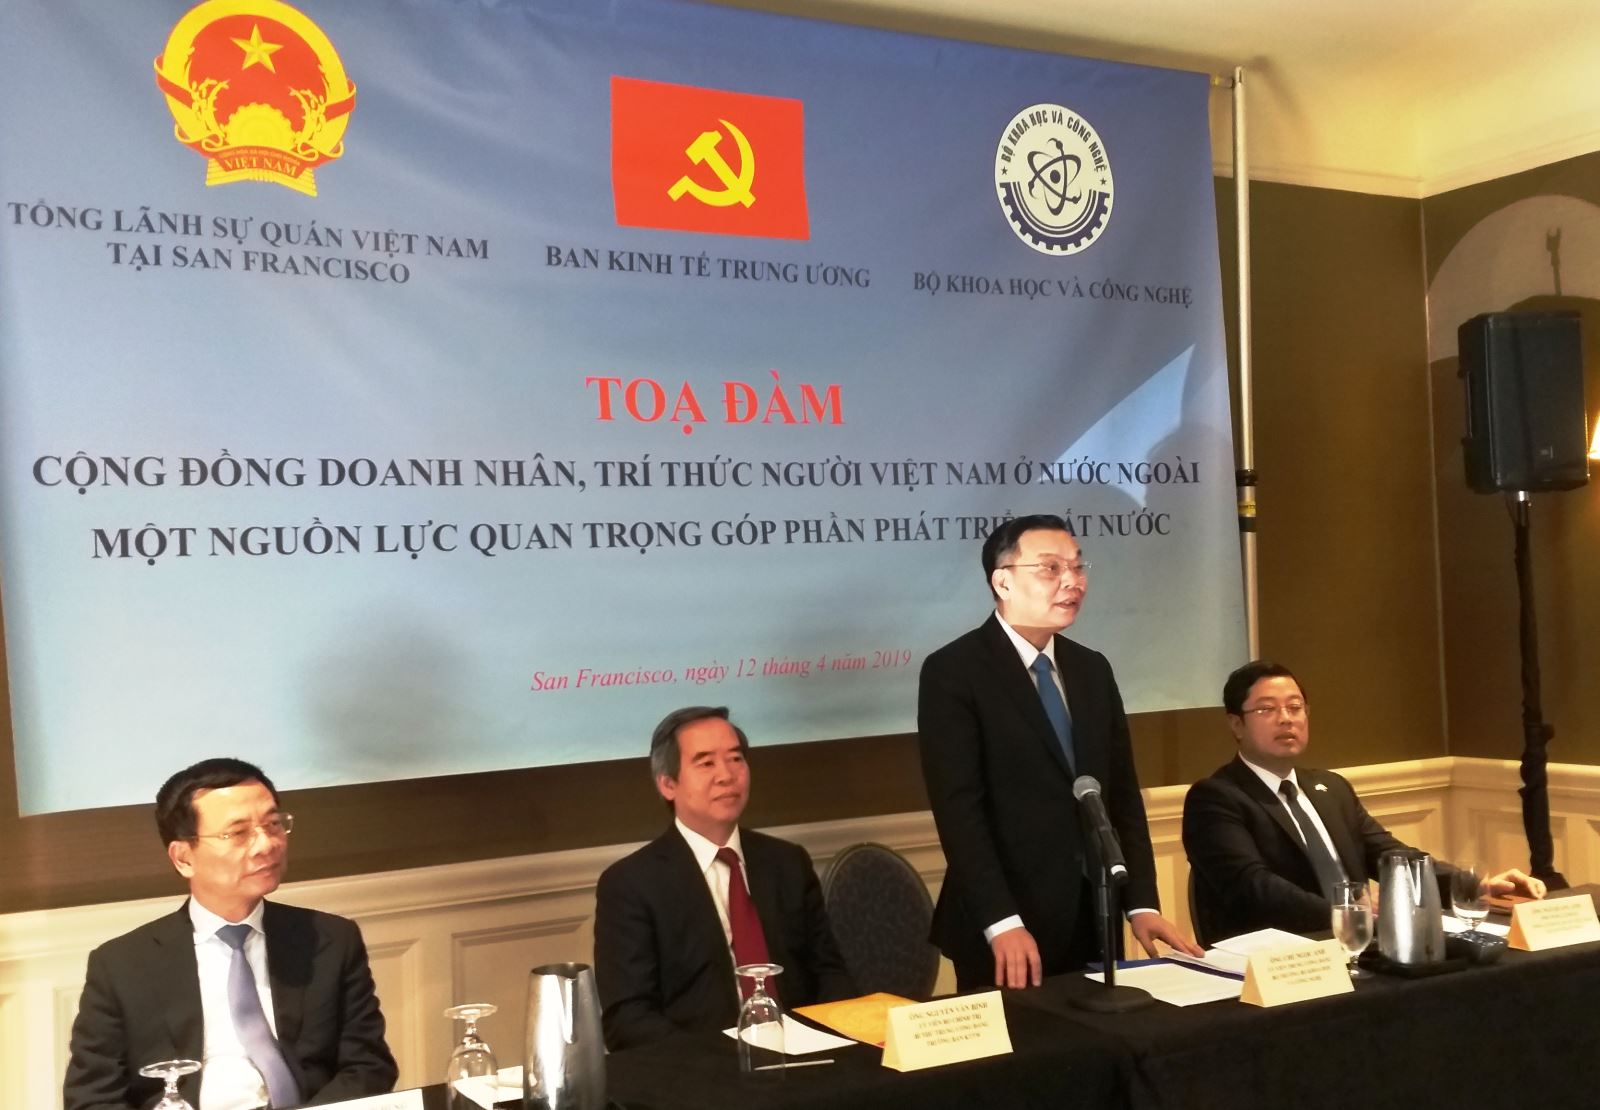 Cộng đồng trí thức, doanh nhân Việt Nam ở nước ngoài – một nguồn lực quan trọng góp phần phát triển đất nước